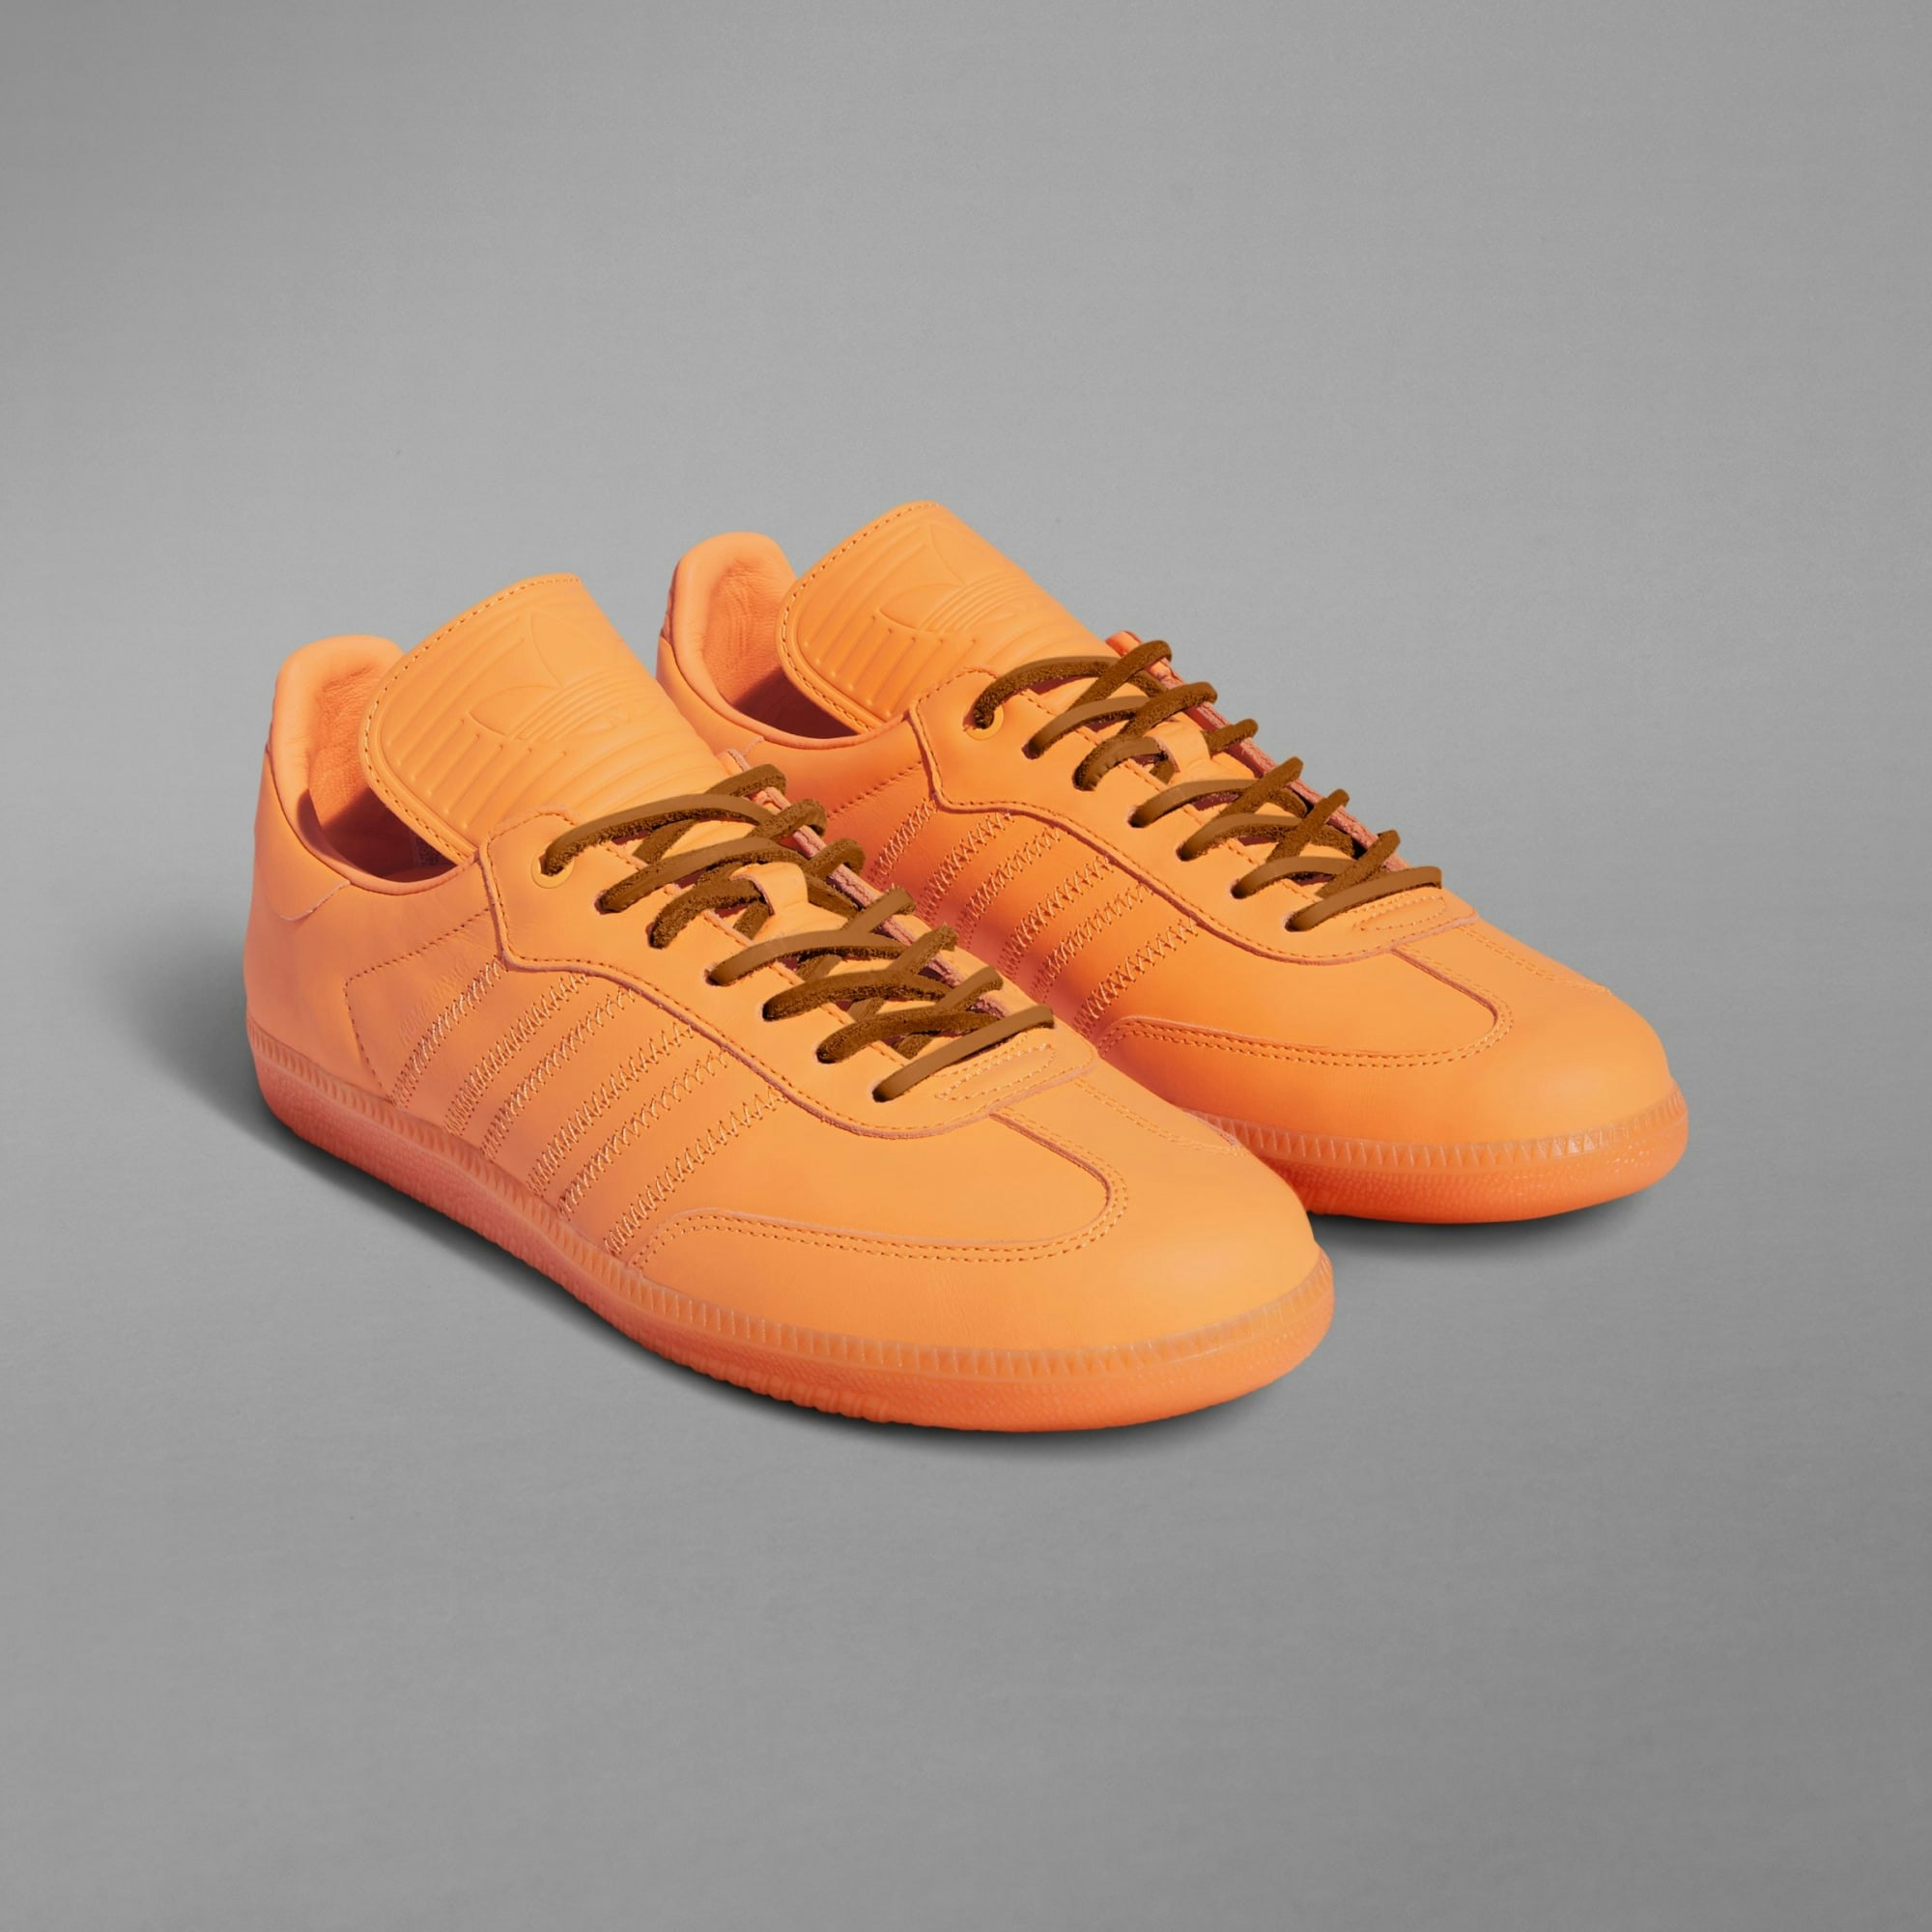 Pharrell Williams x adidas Samba "Humanrace" (Orange)